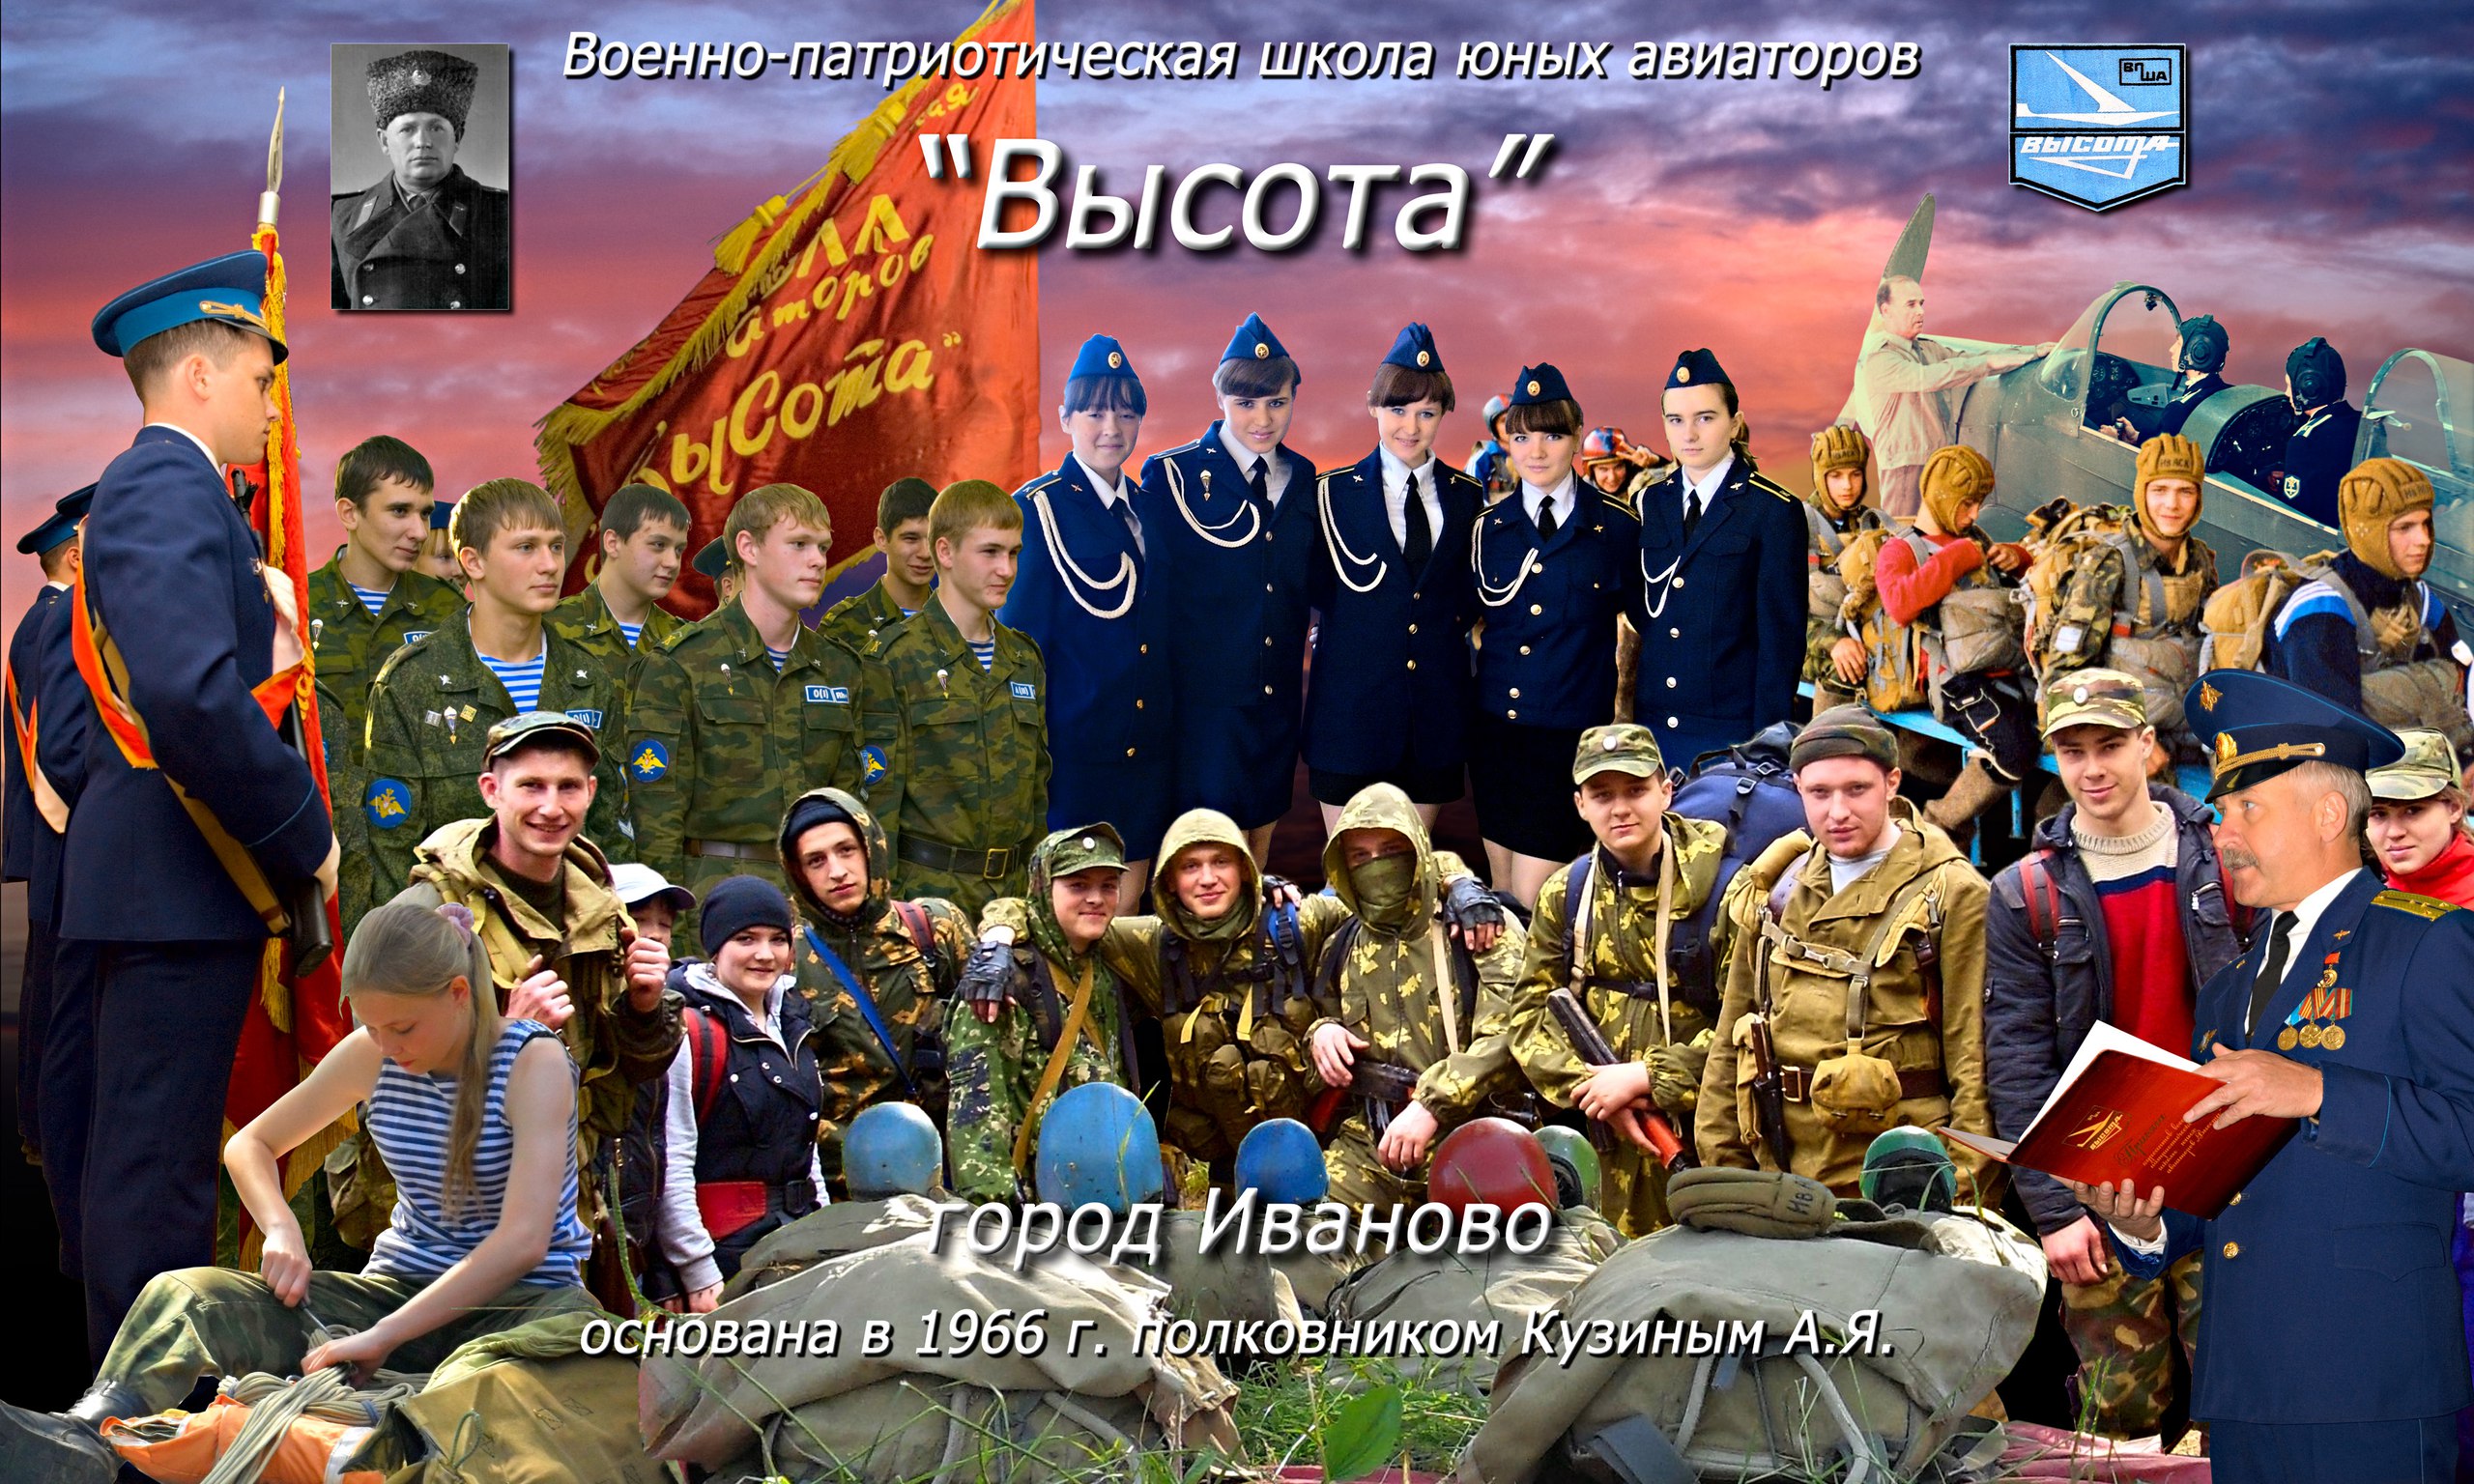 Праздничное мероприятие, посвящённое 50-летию Ивановской военно-патриотической школы авиаторов